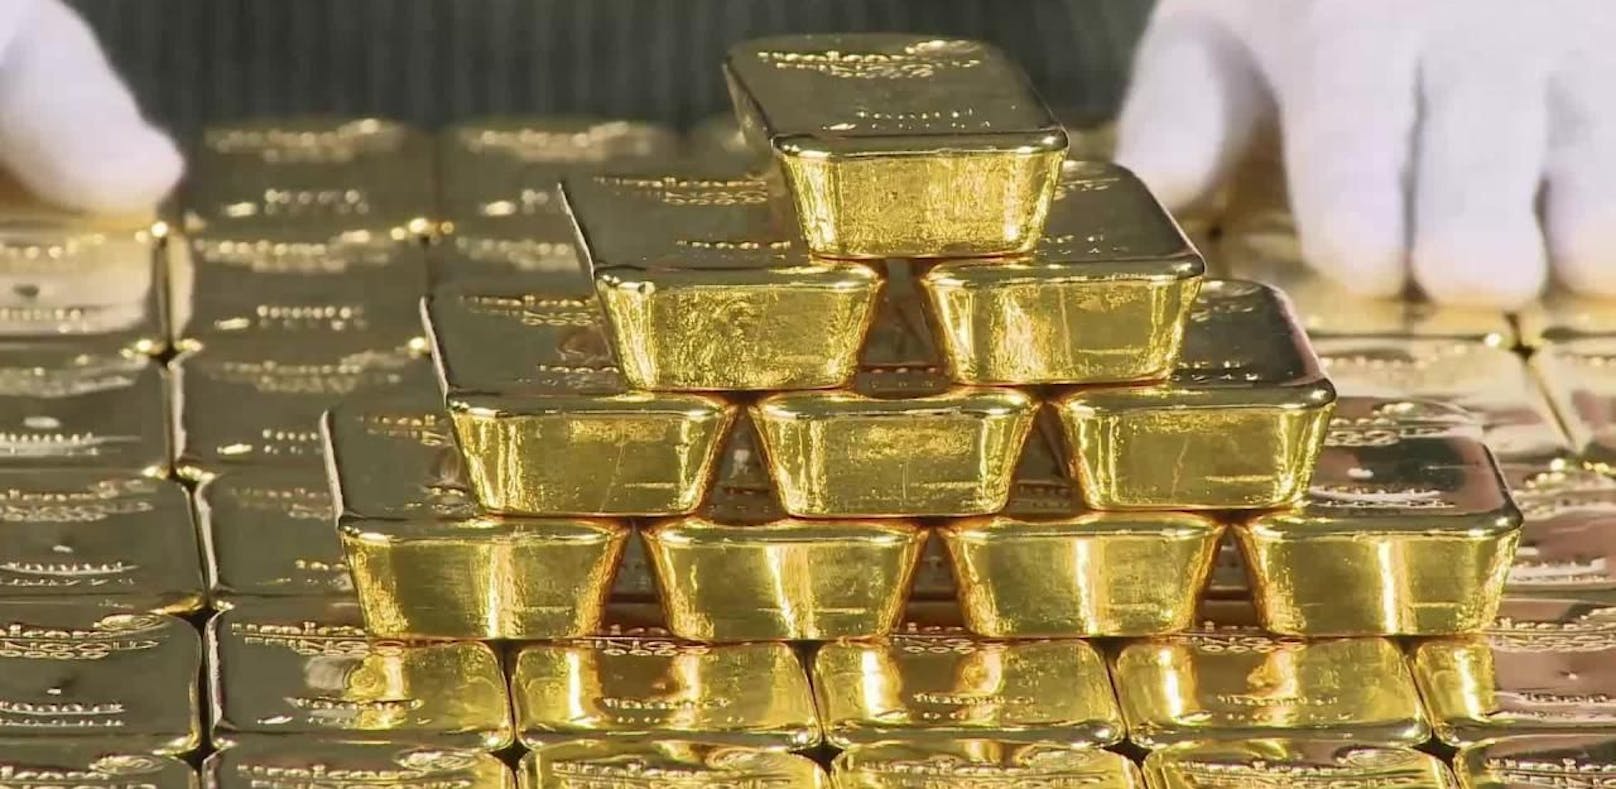 18-Jähriger prellt Bank mit "Russen-Gold" um Vermögen